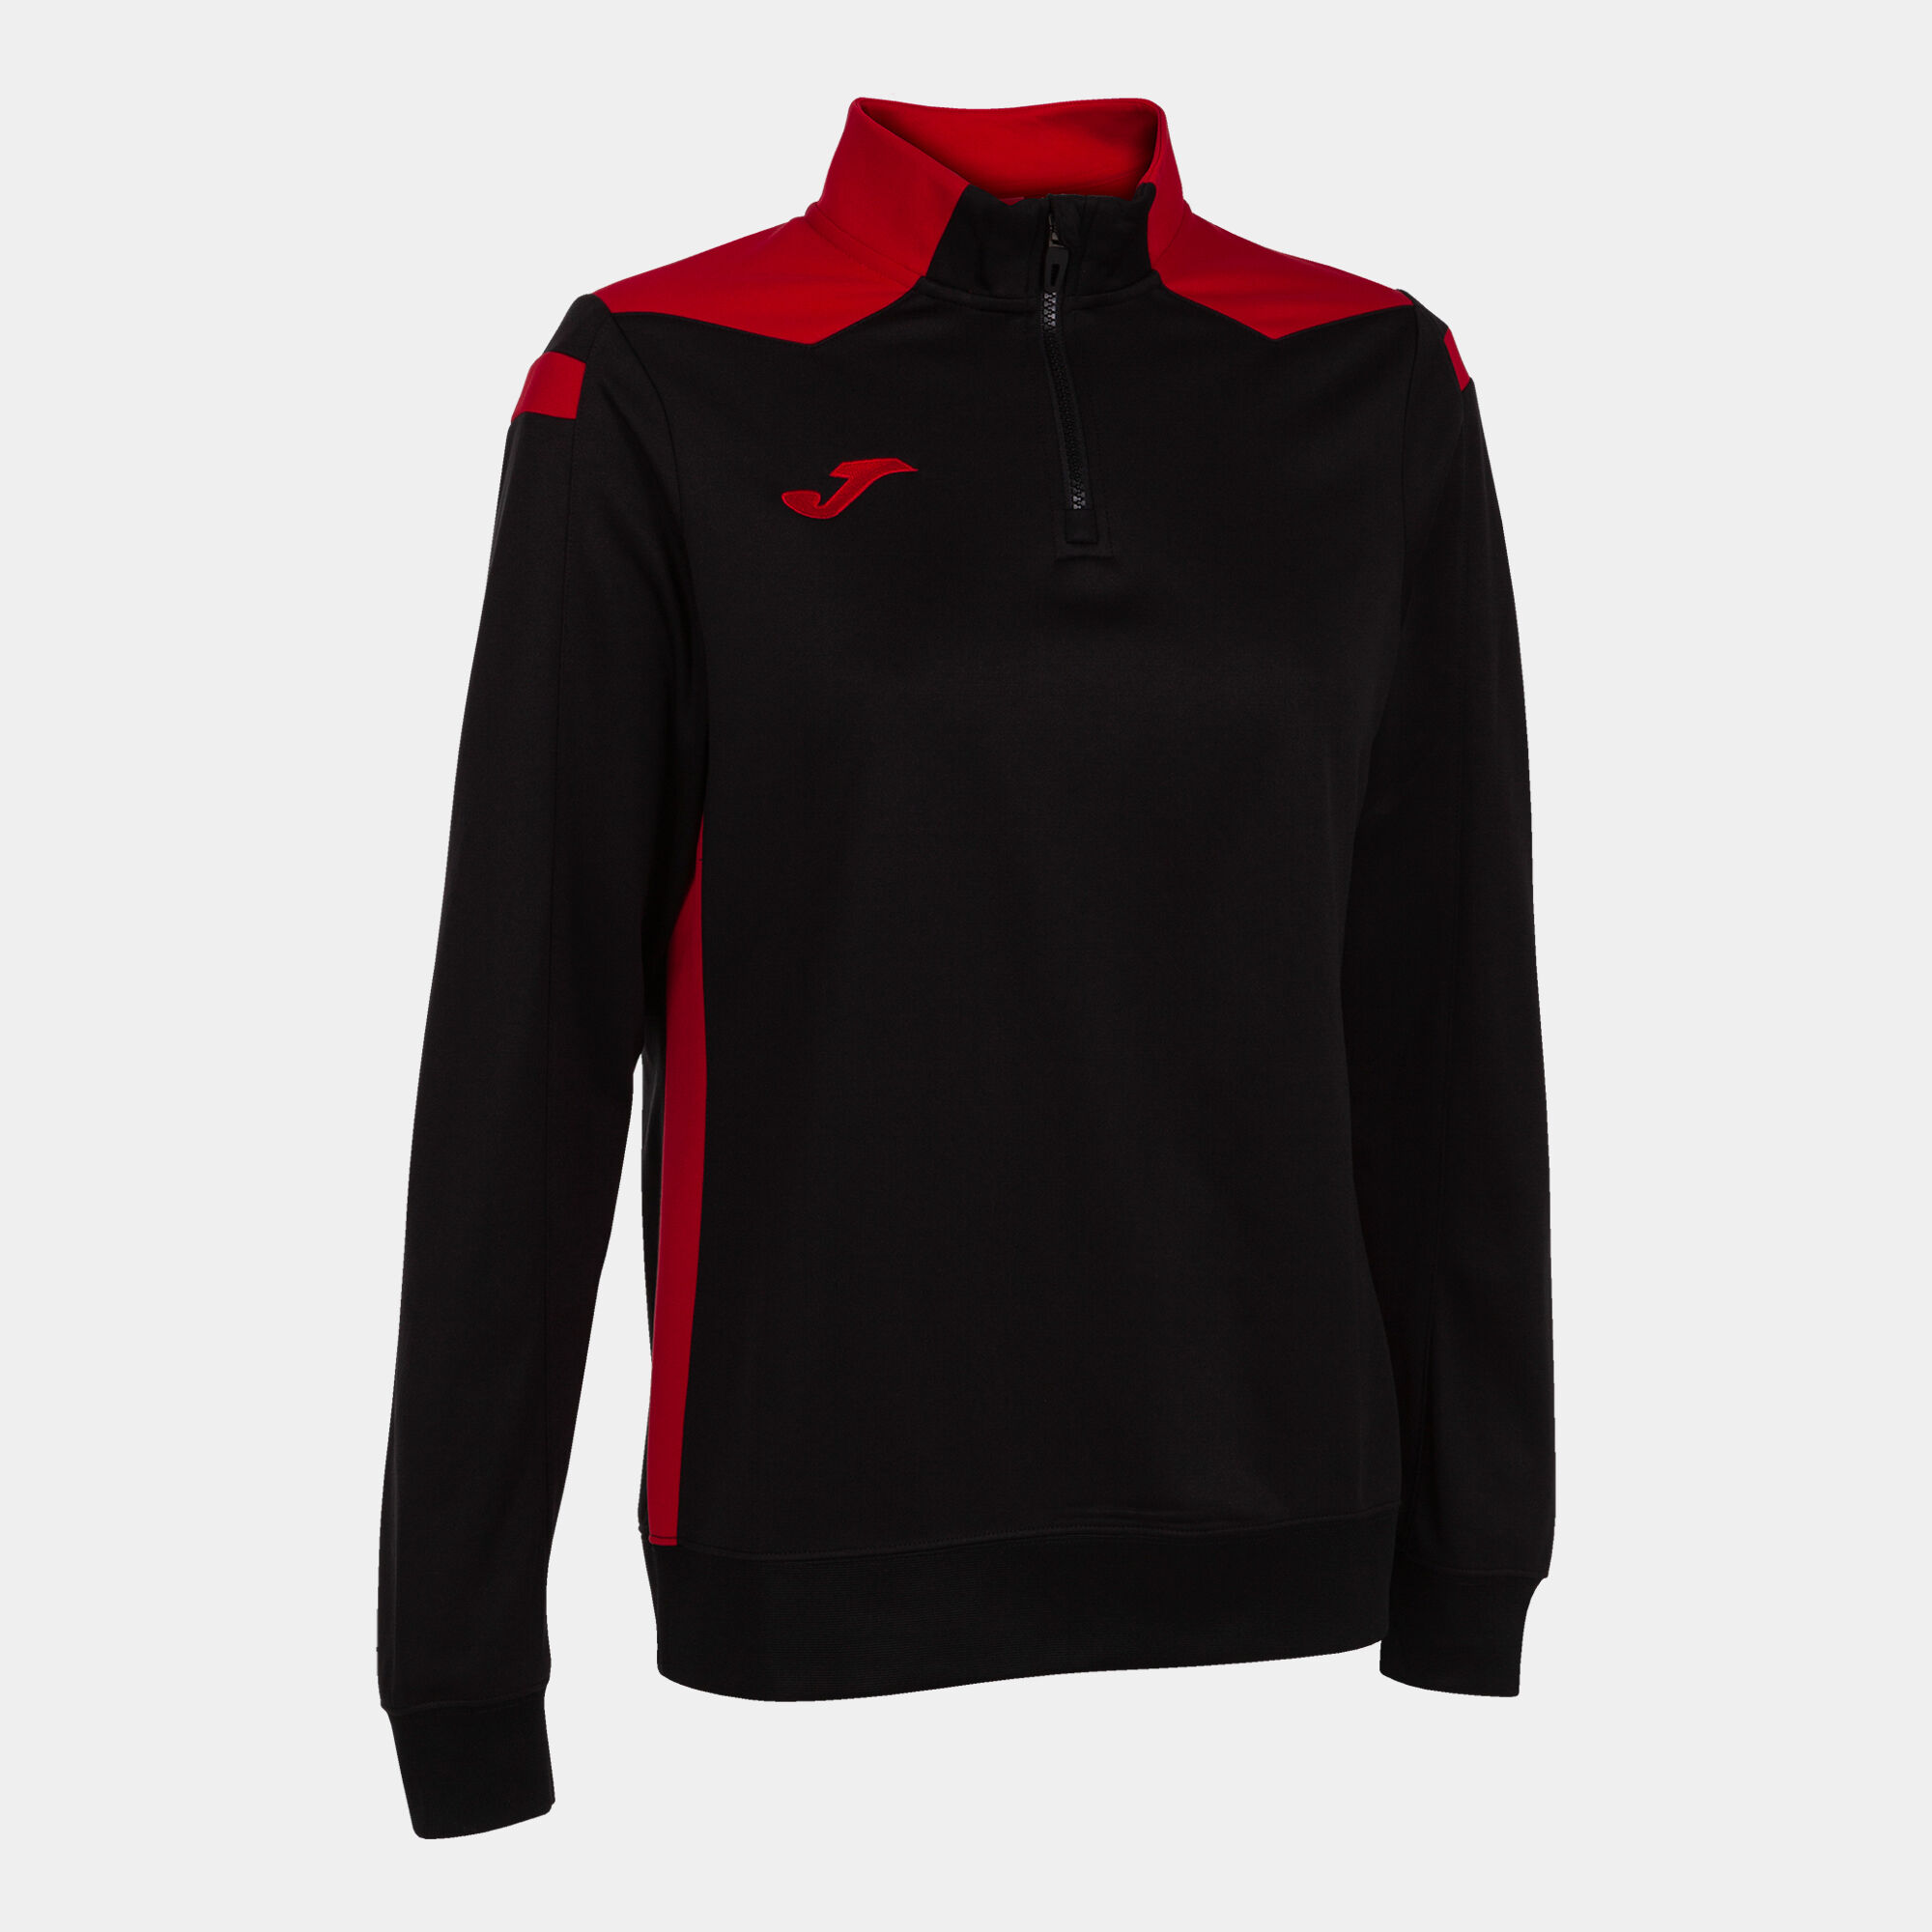 Sweat-shirt femme Championship VI noir rouge